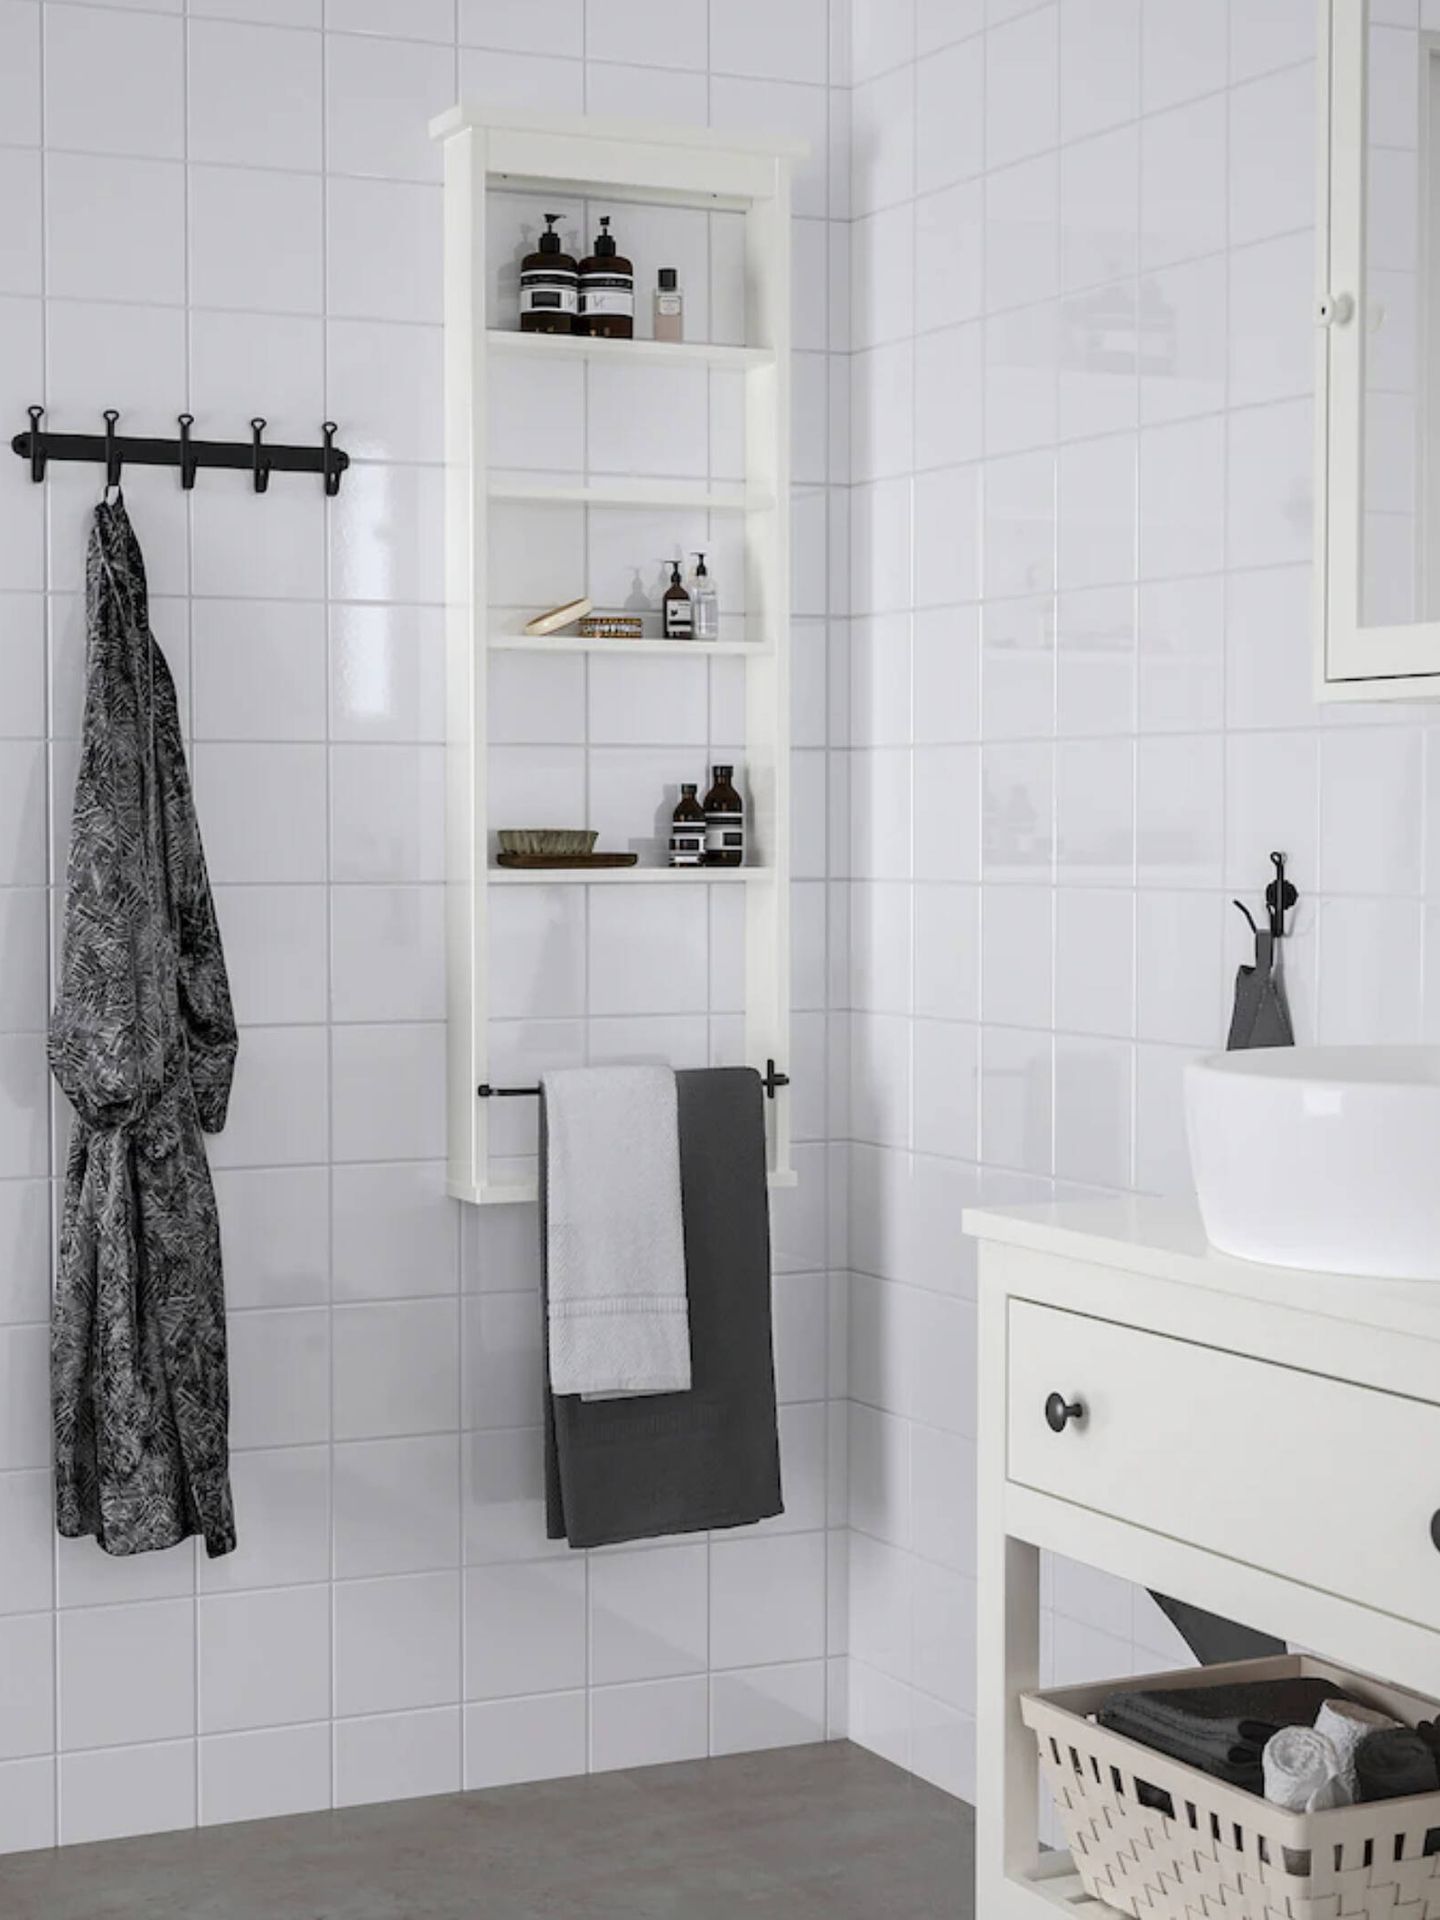 Soluciones de decoración para un baño pequeño. (Cortesía/Ikea)